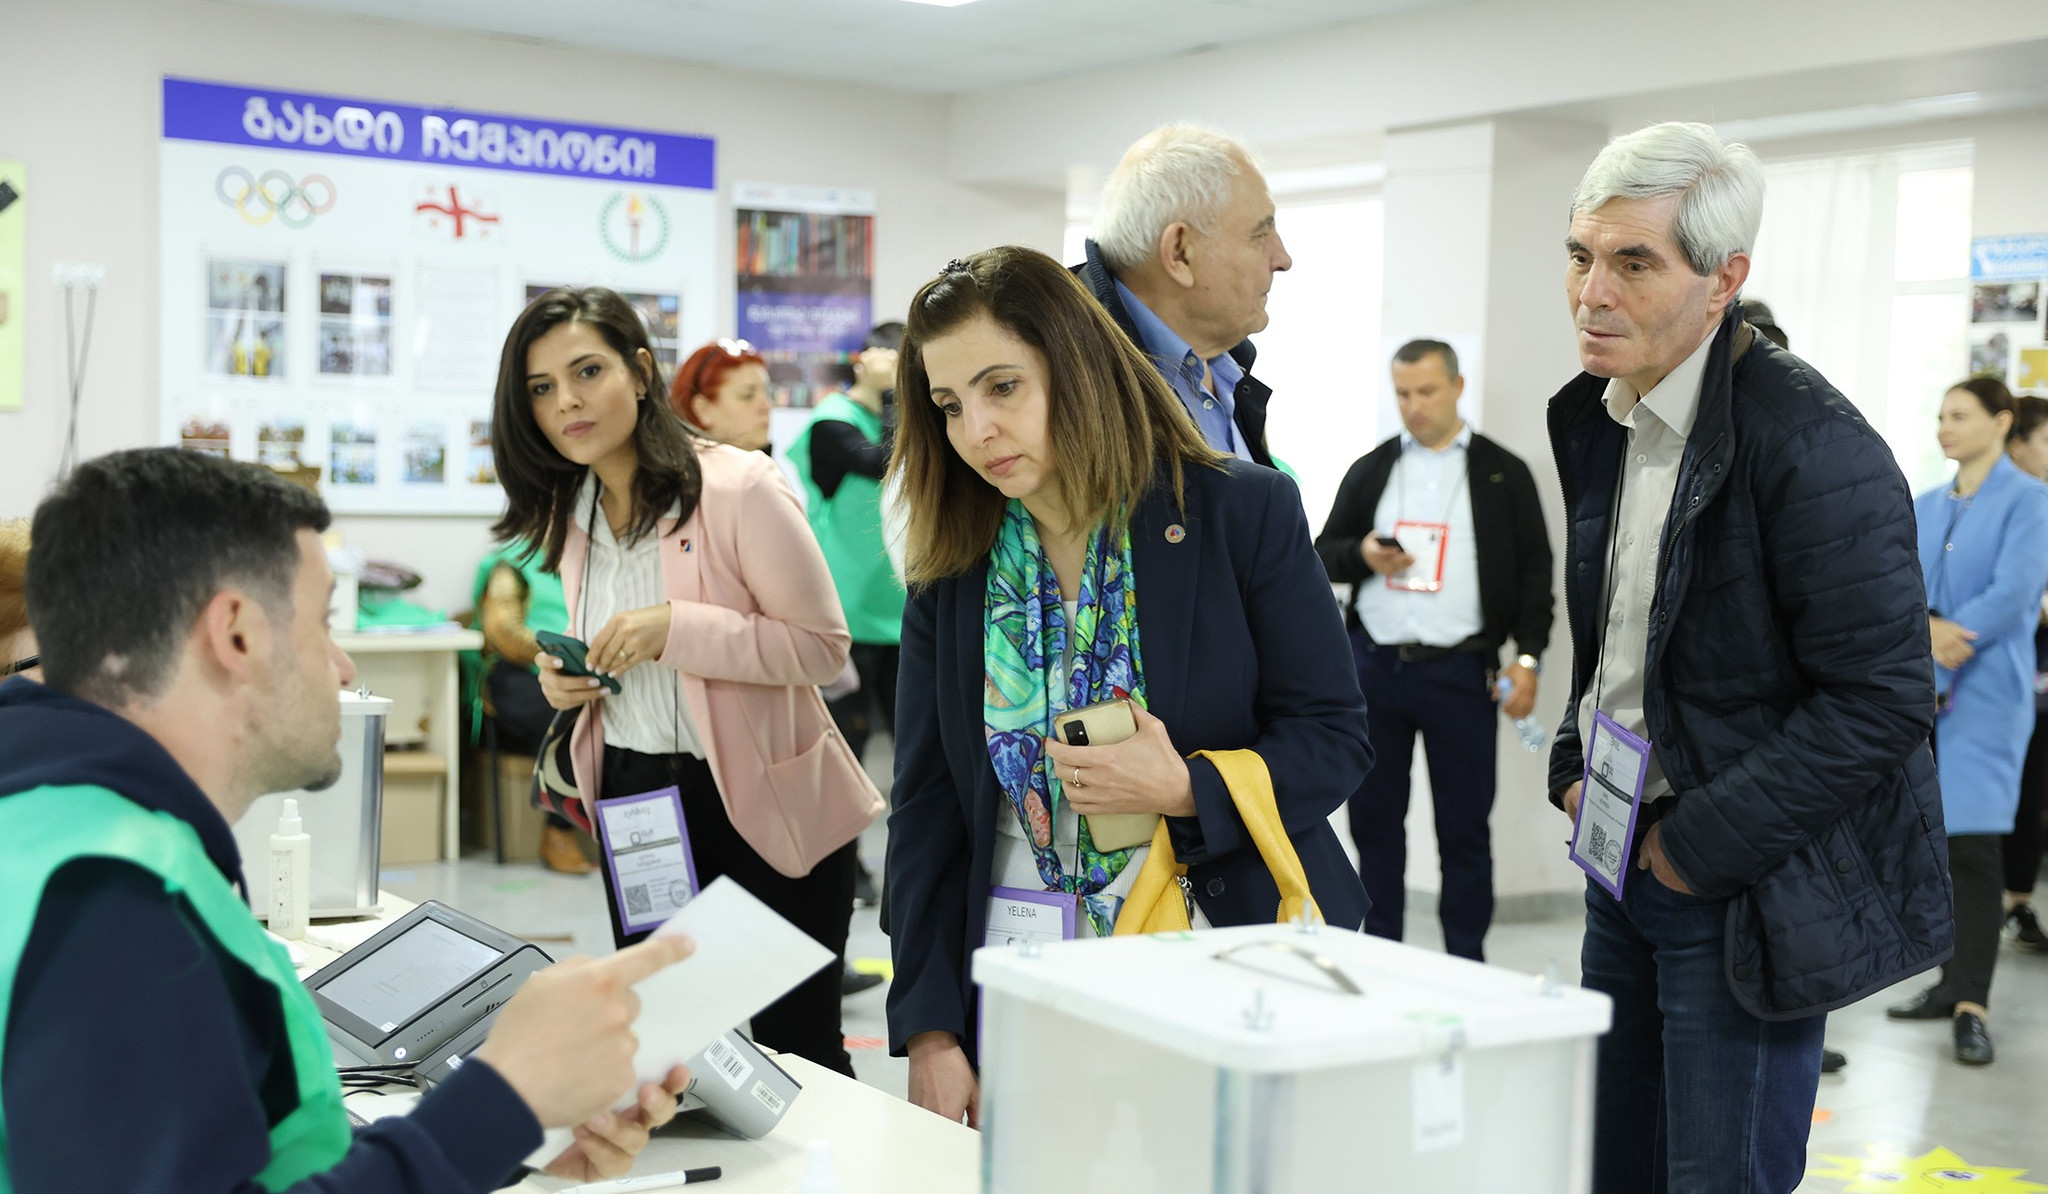 ՀՀ ԿԸՀ պատվիրակությունը մասնակցել է Վրաստանի ՏԻՄ ընտրություններին